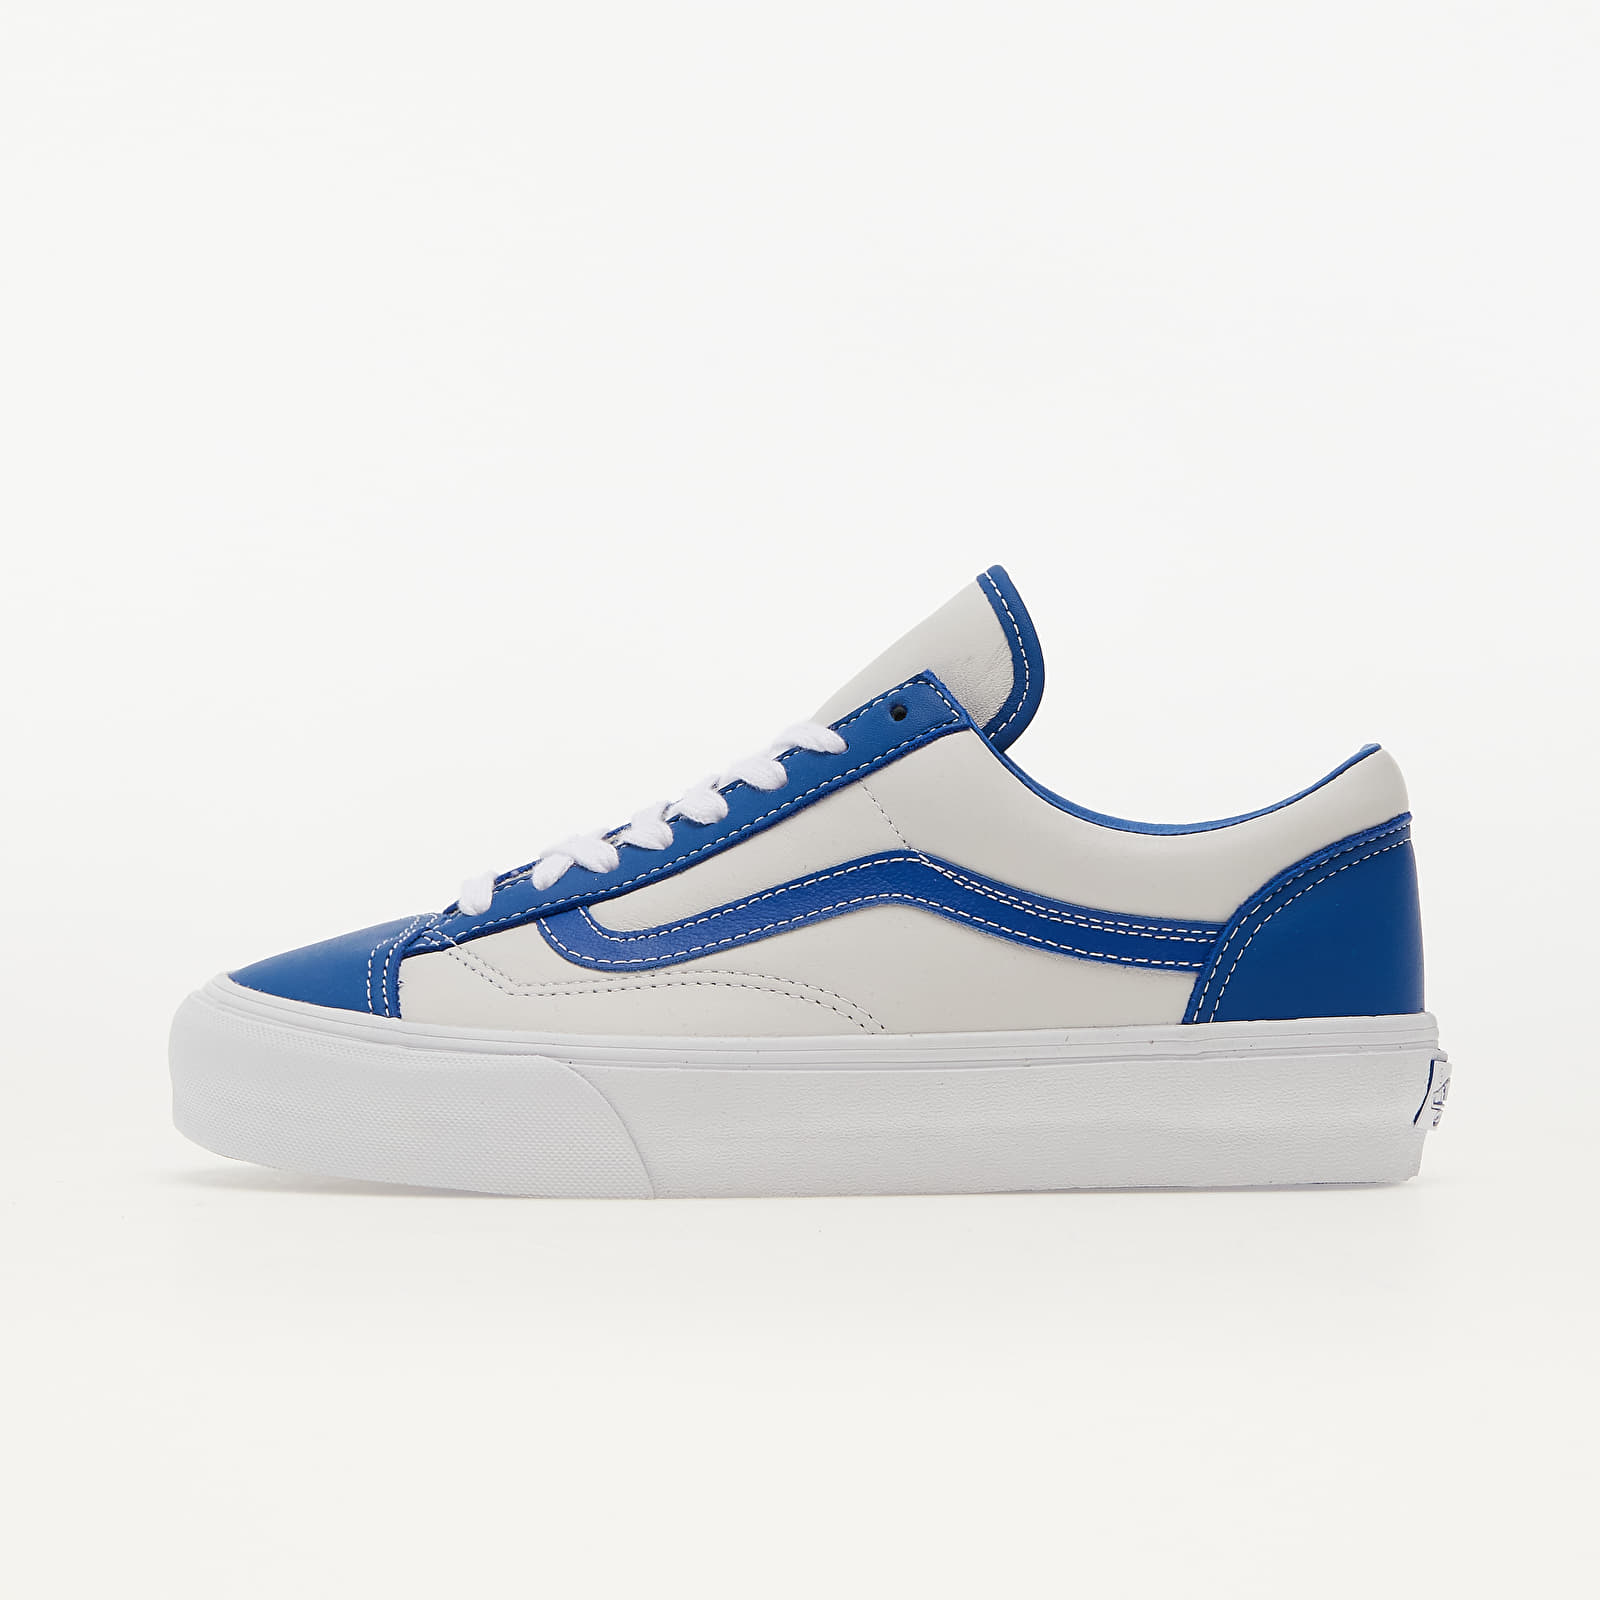 Herren Sneaker und Schuhe Vans Vault Style 36 LX (Leather) Nautical Blue/ True White